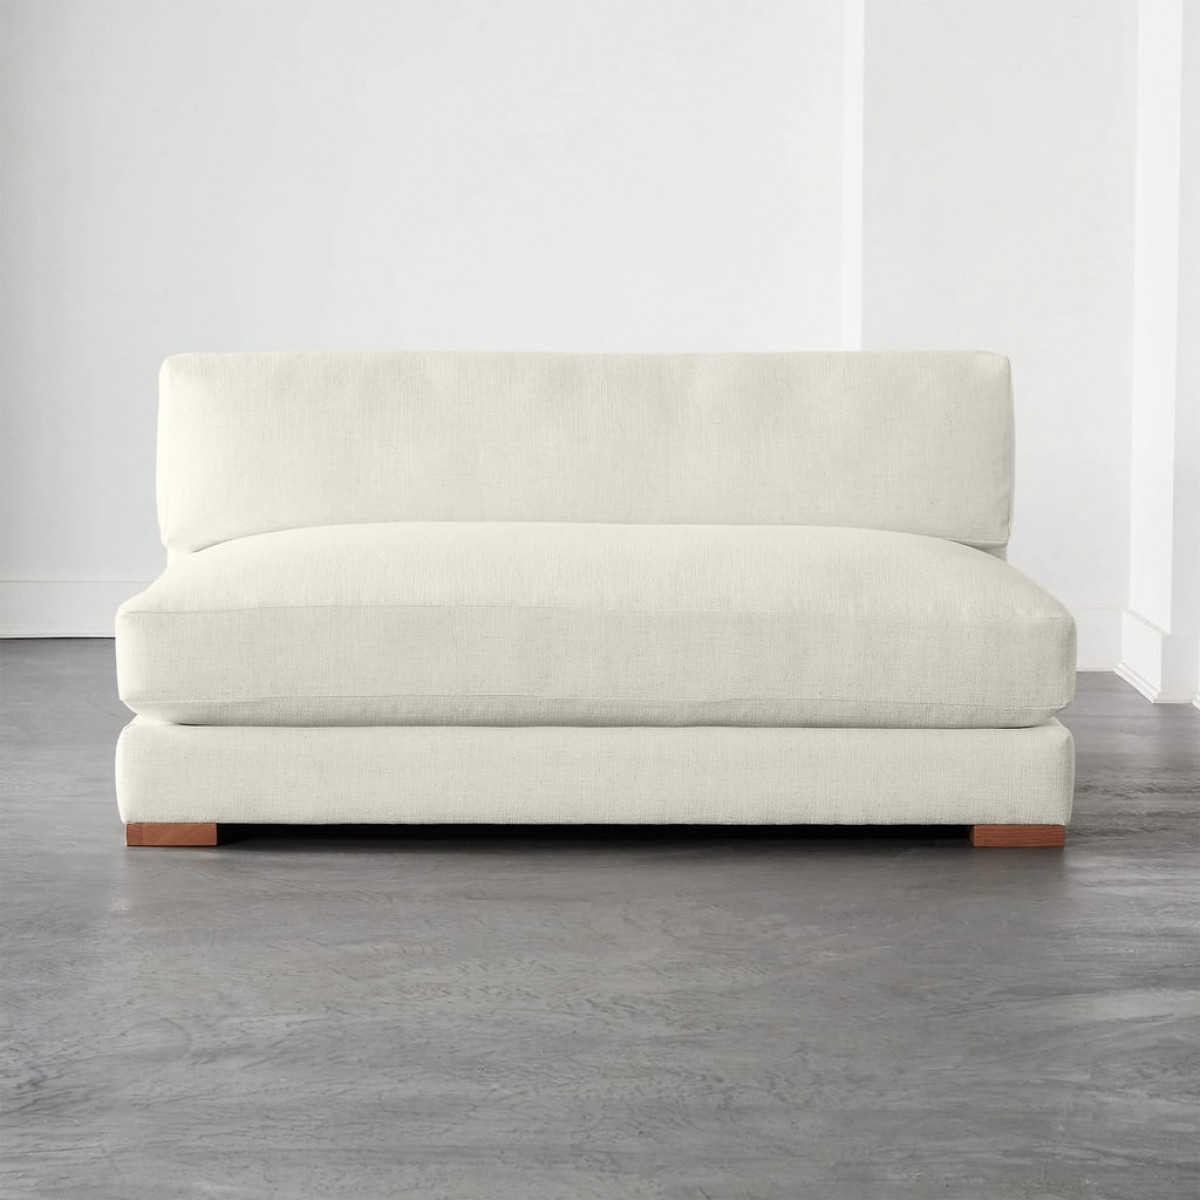 Loại sofa này phù hợp với các căn hộ nhỏ, phần đệm có thể tháo ra, đặt trực tiếp dưới đất, tạo thành một giường nhỏ.